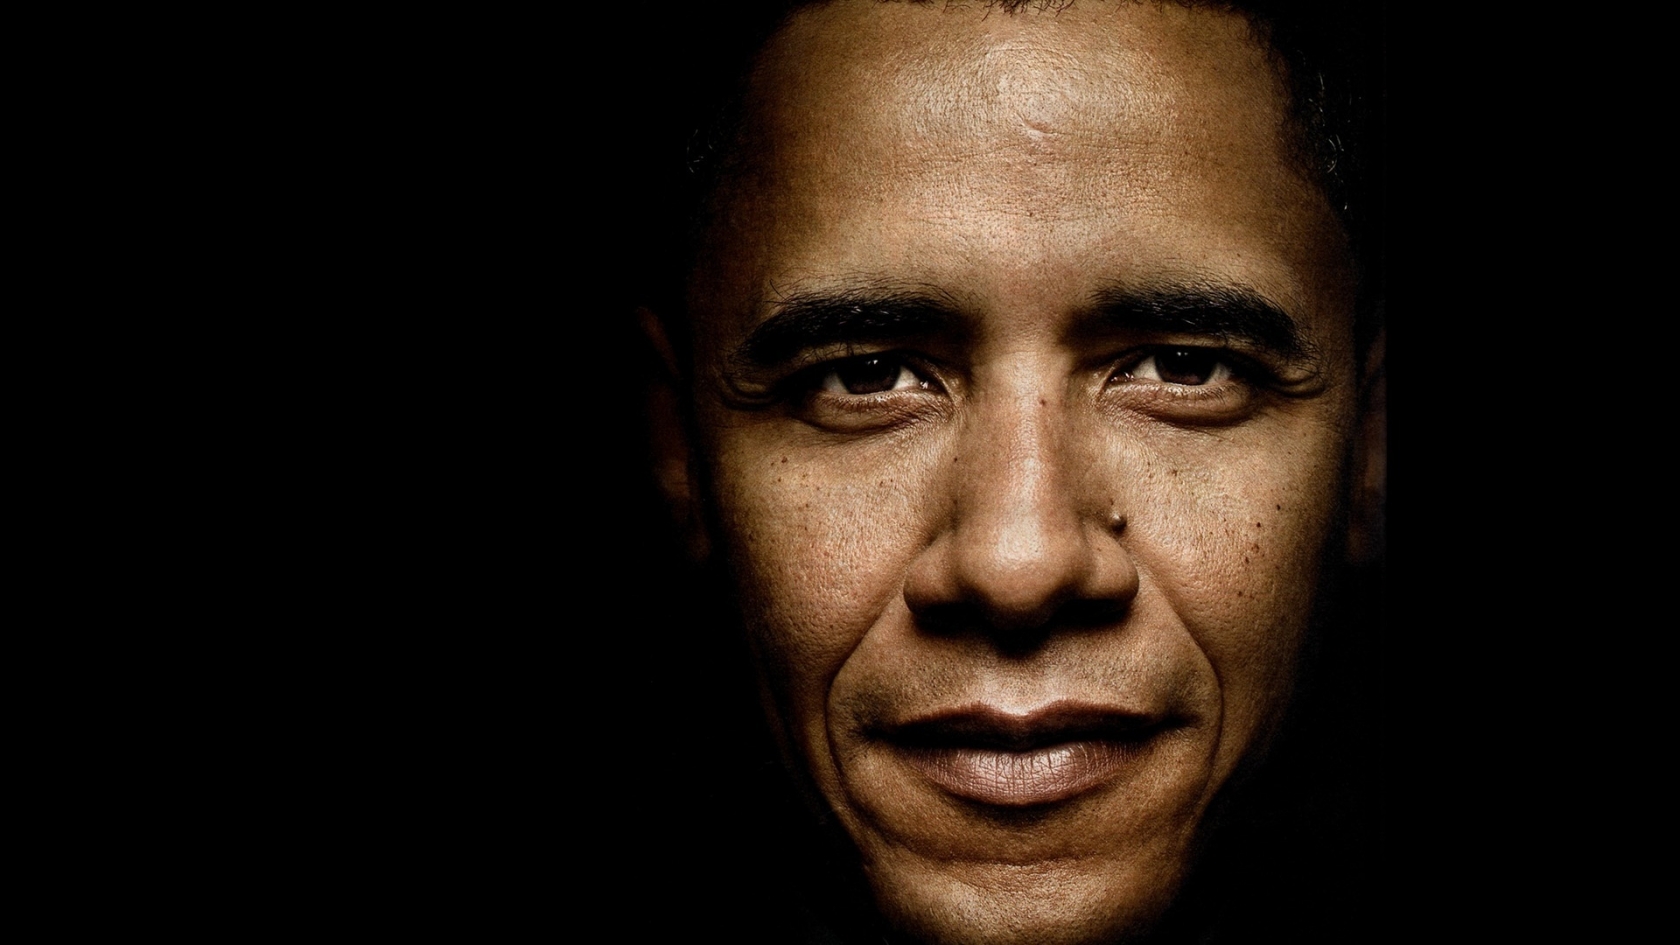 Barack Obama Close Up for 1680 x 945 HDTV resolution